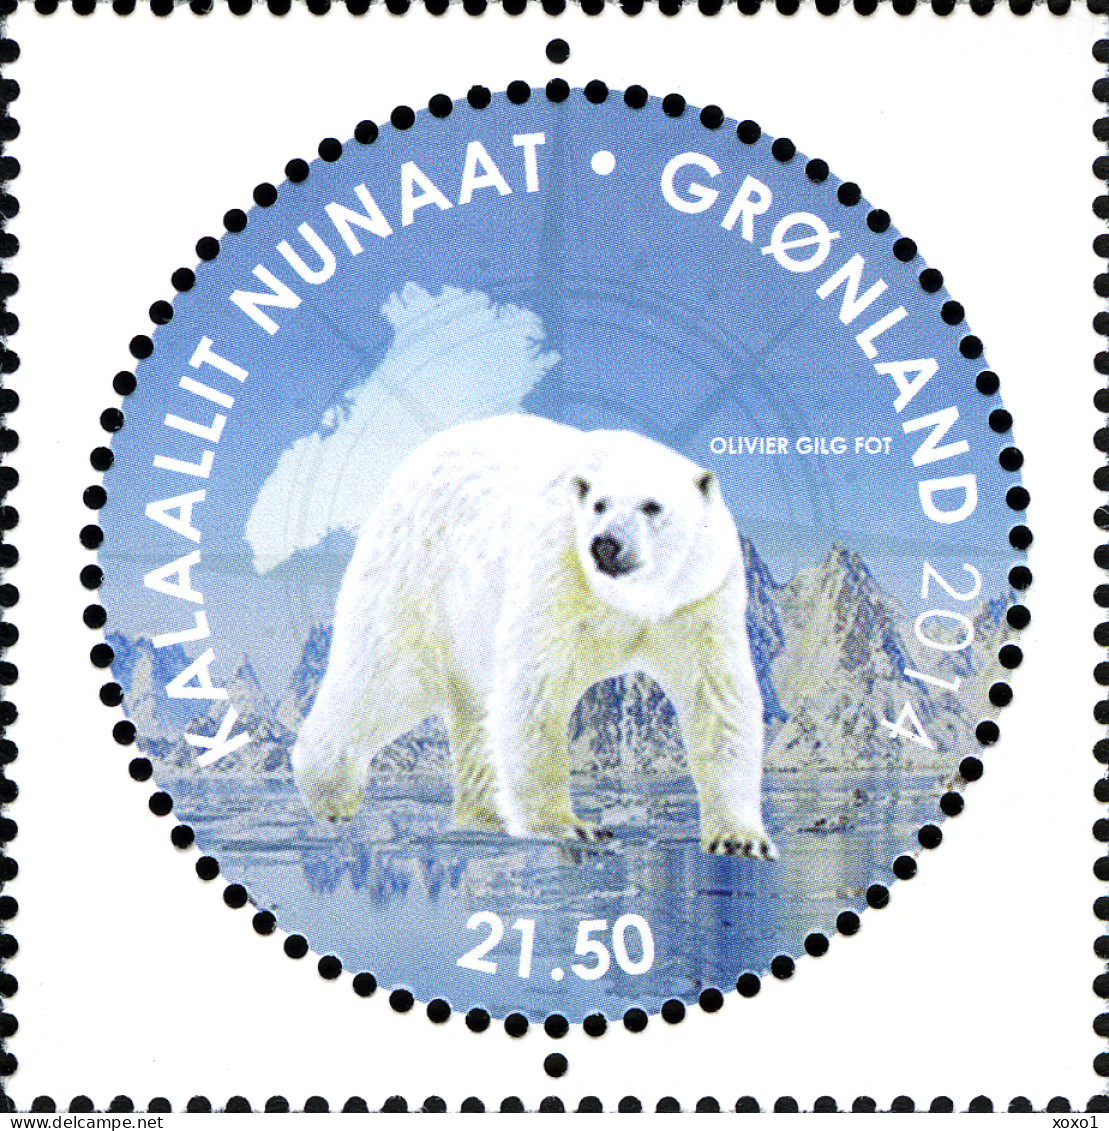 Greenland 2014 MiNr. 680 (Block 70) Dänemark Grönland Ross Antarctica Pole Bears BIRDS Penguins 1v + S\sh MNH** 13.00 € - Arctic Wildlife